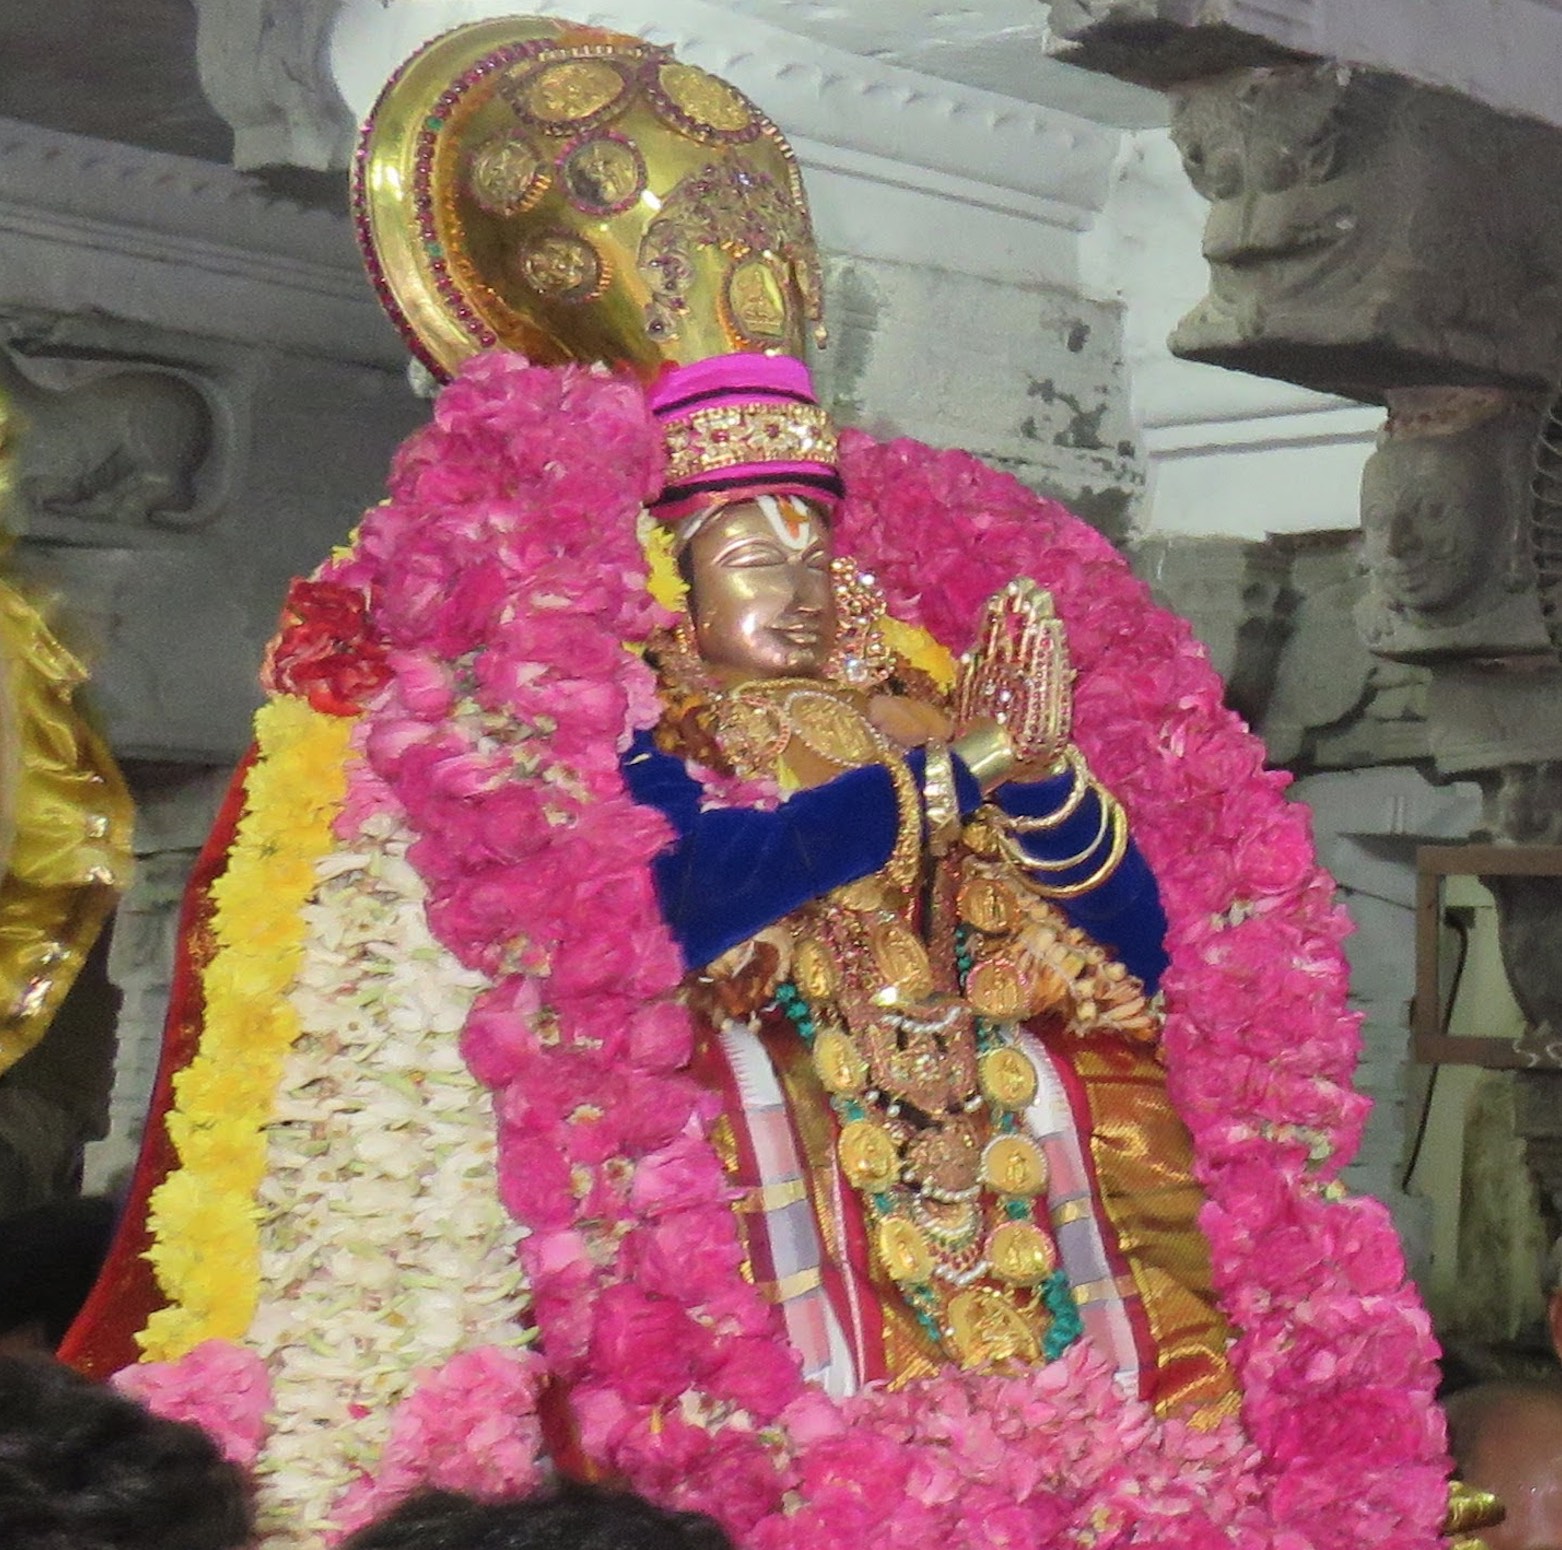 Thoopul Swami Desikan Manmadha Varusha Thirunakshatra Mahotsavam : Purattasi Thiruvonam Thirunaal (Part 3)